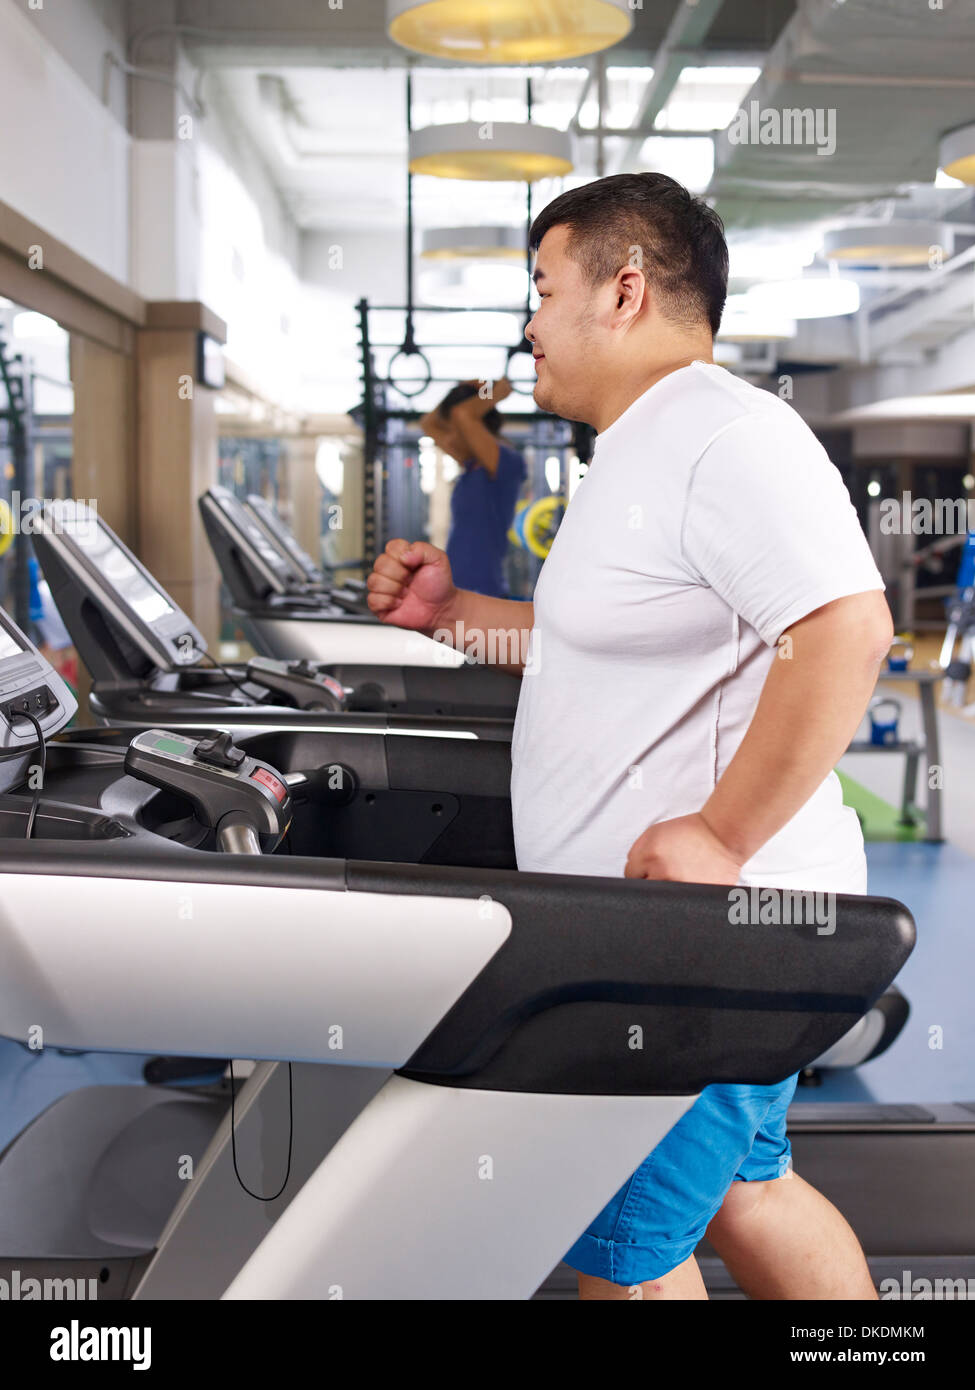 Obesity treadmill immagini e fotografie stock ad alta risoluzione - Alamy